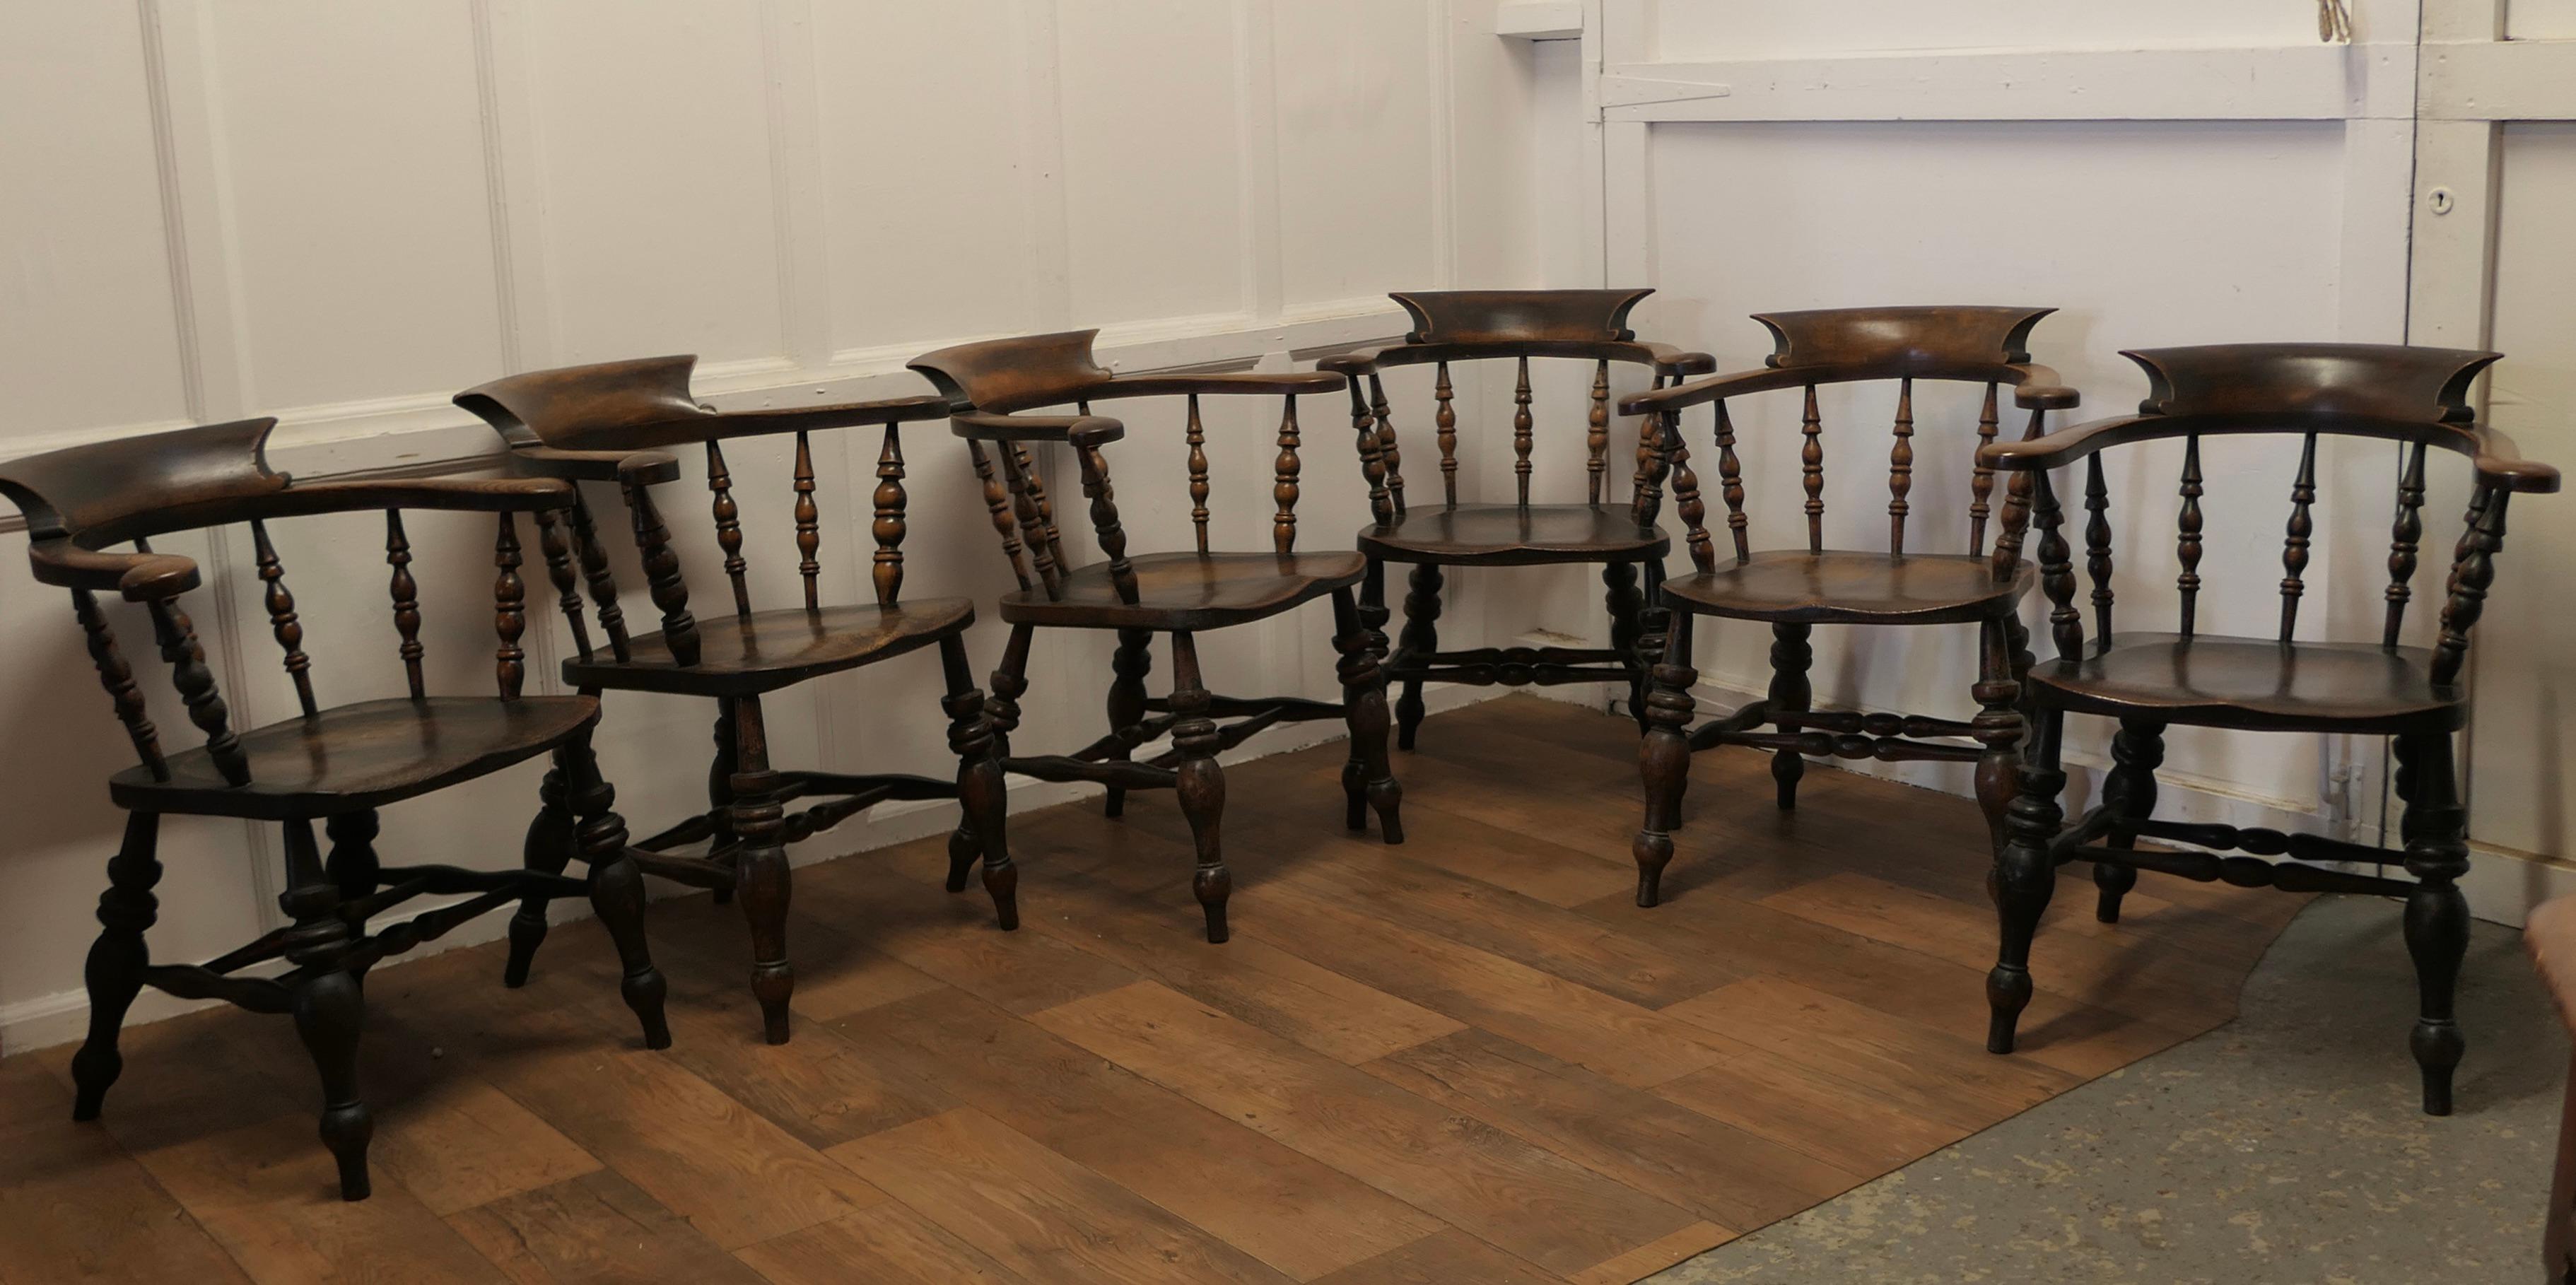 Ensemble de 6 chaises Windsor Carver anglaises en chêne et orme

Ce style est connu sous plusieurs noms : arc de fumeur, chaise Windsor ou chaise de capitaine. 

Très rare ensemble original de 6 chaises Windsor en chêne et orme anglais, toutes en